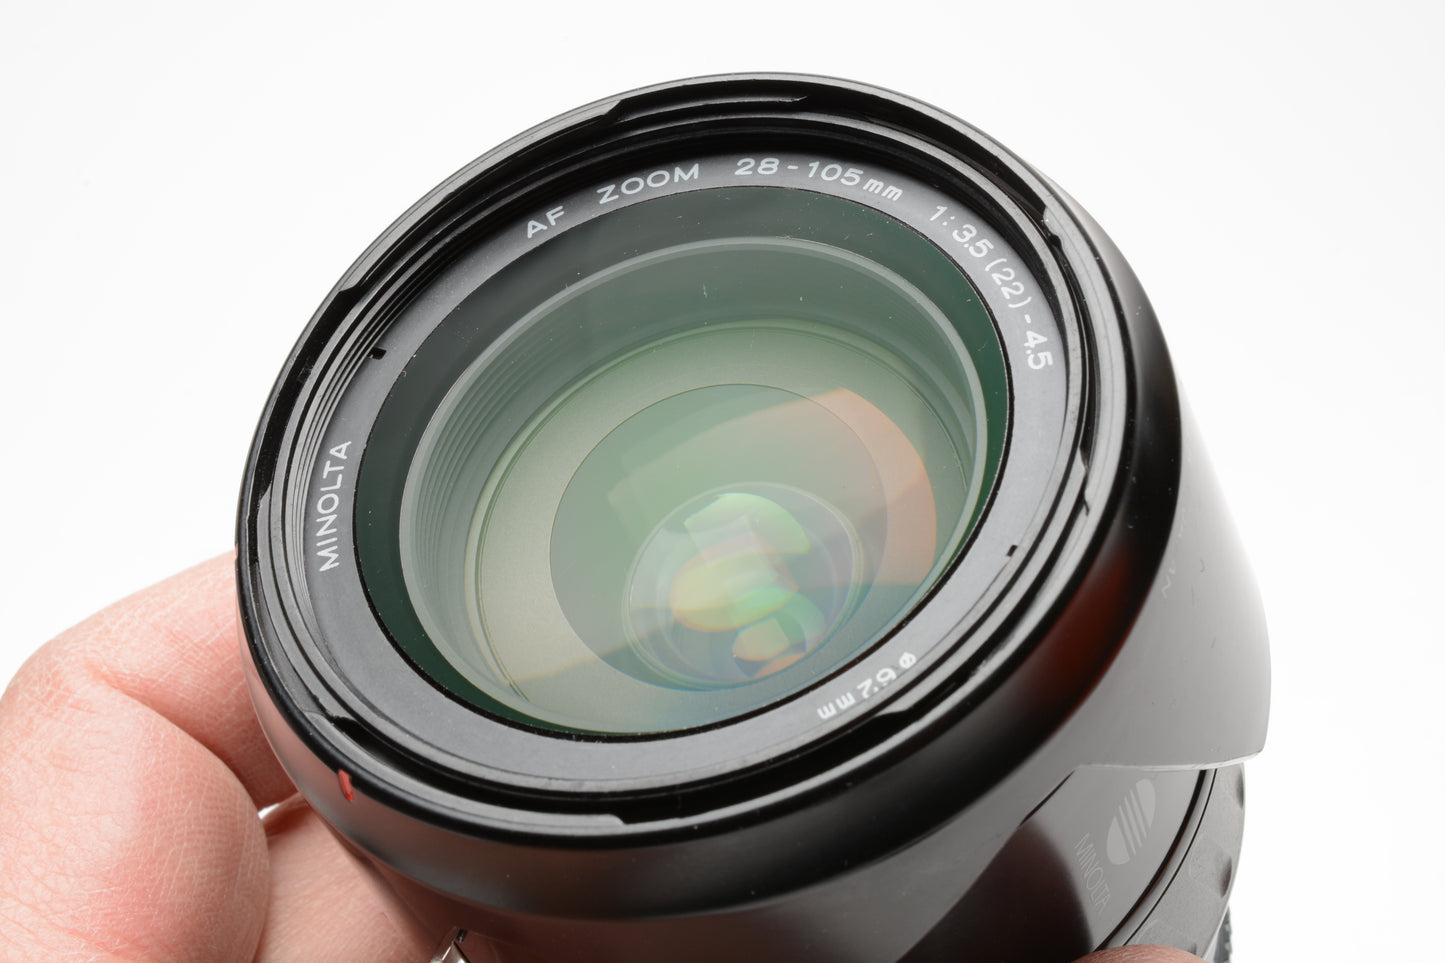 Minolta Maxxum AF 28-105mm f3.5-4.5 zoom lens, hood, caps, Sony A-Mount